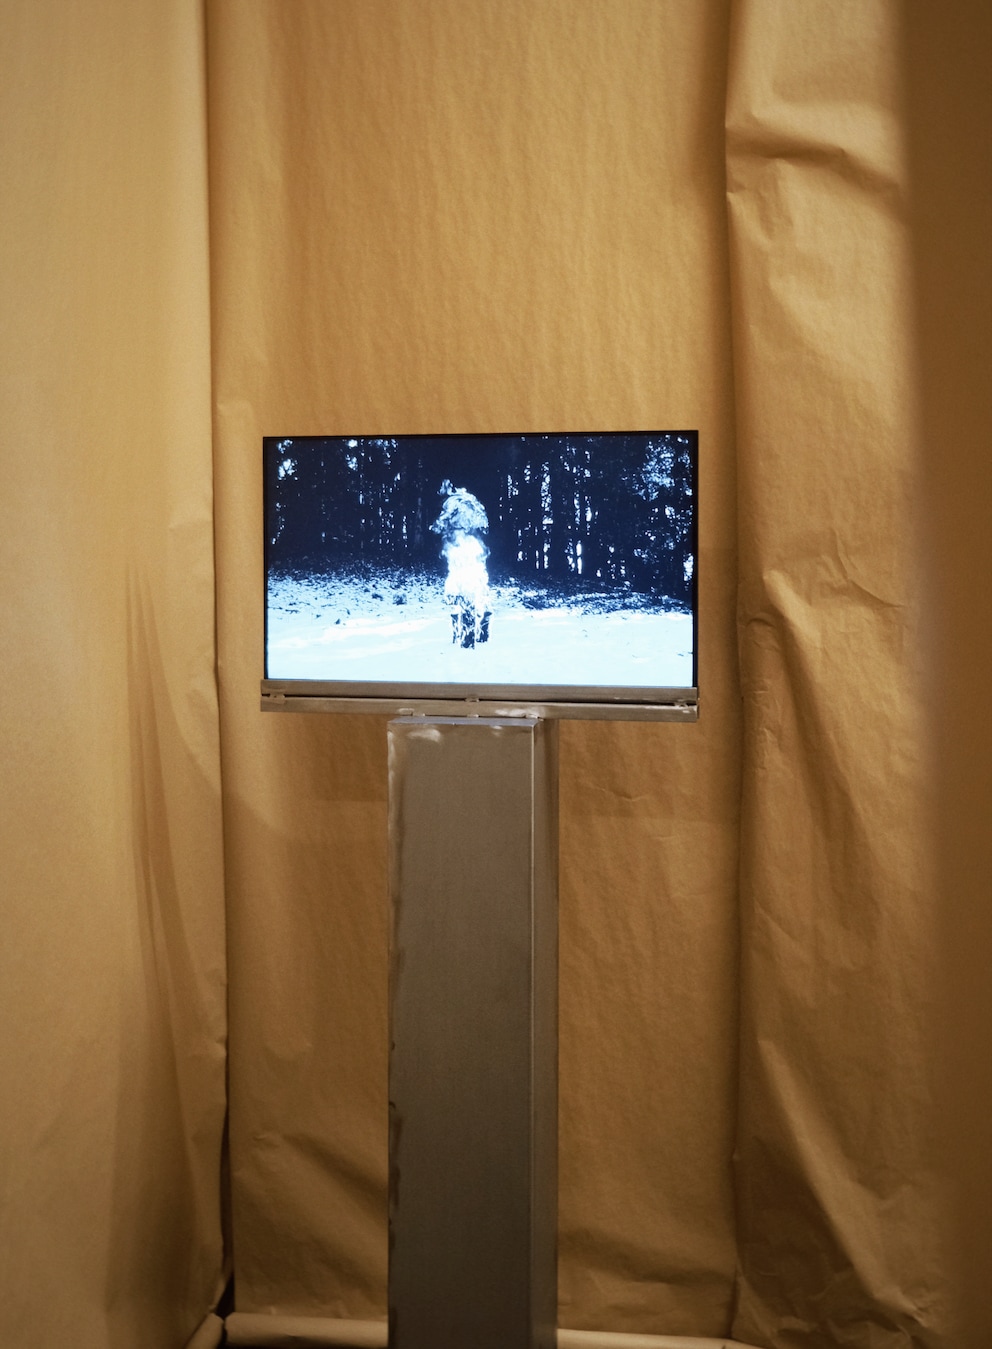 Massgeschneiderte Lösung: Studio Utte hat für ihren Screen einen eigenen TV-Ständer gebaut.